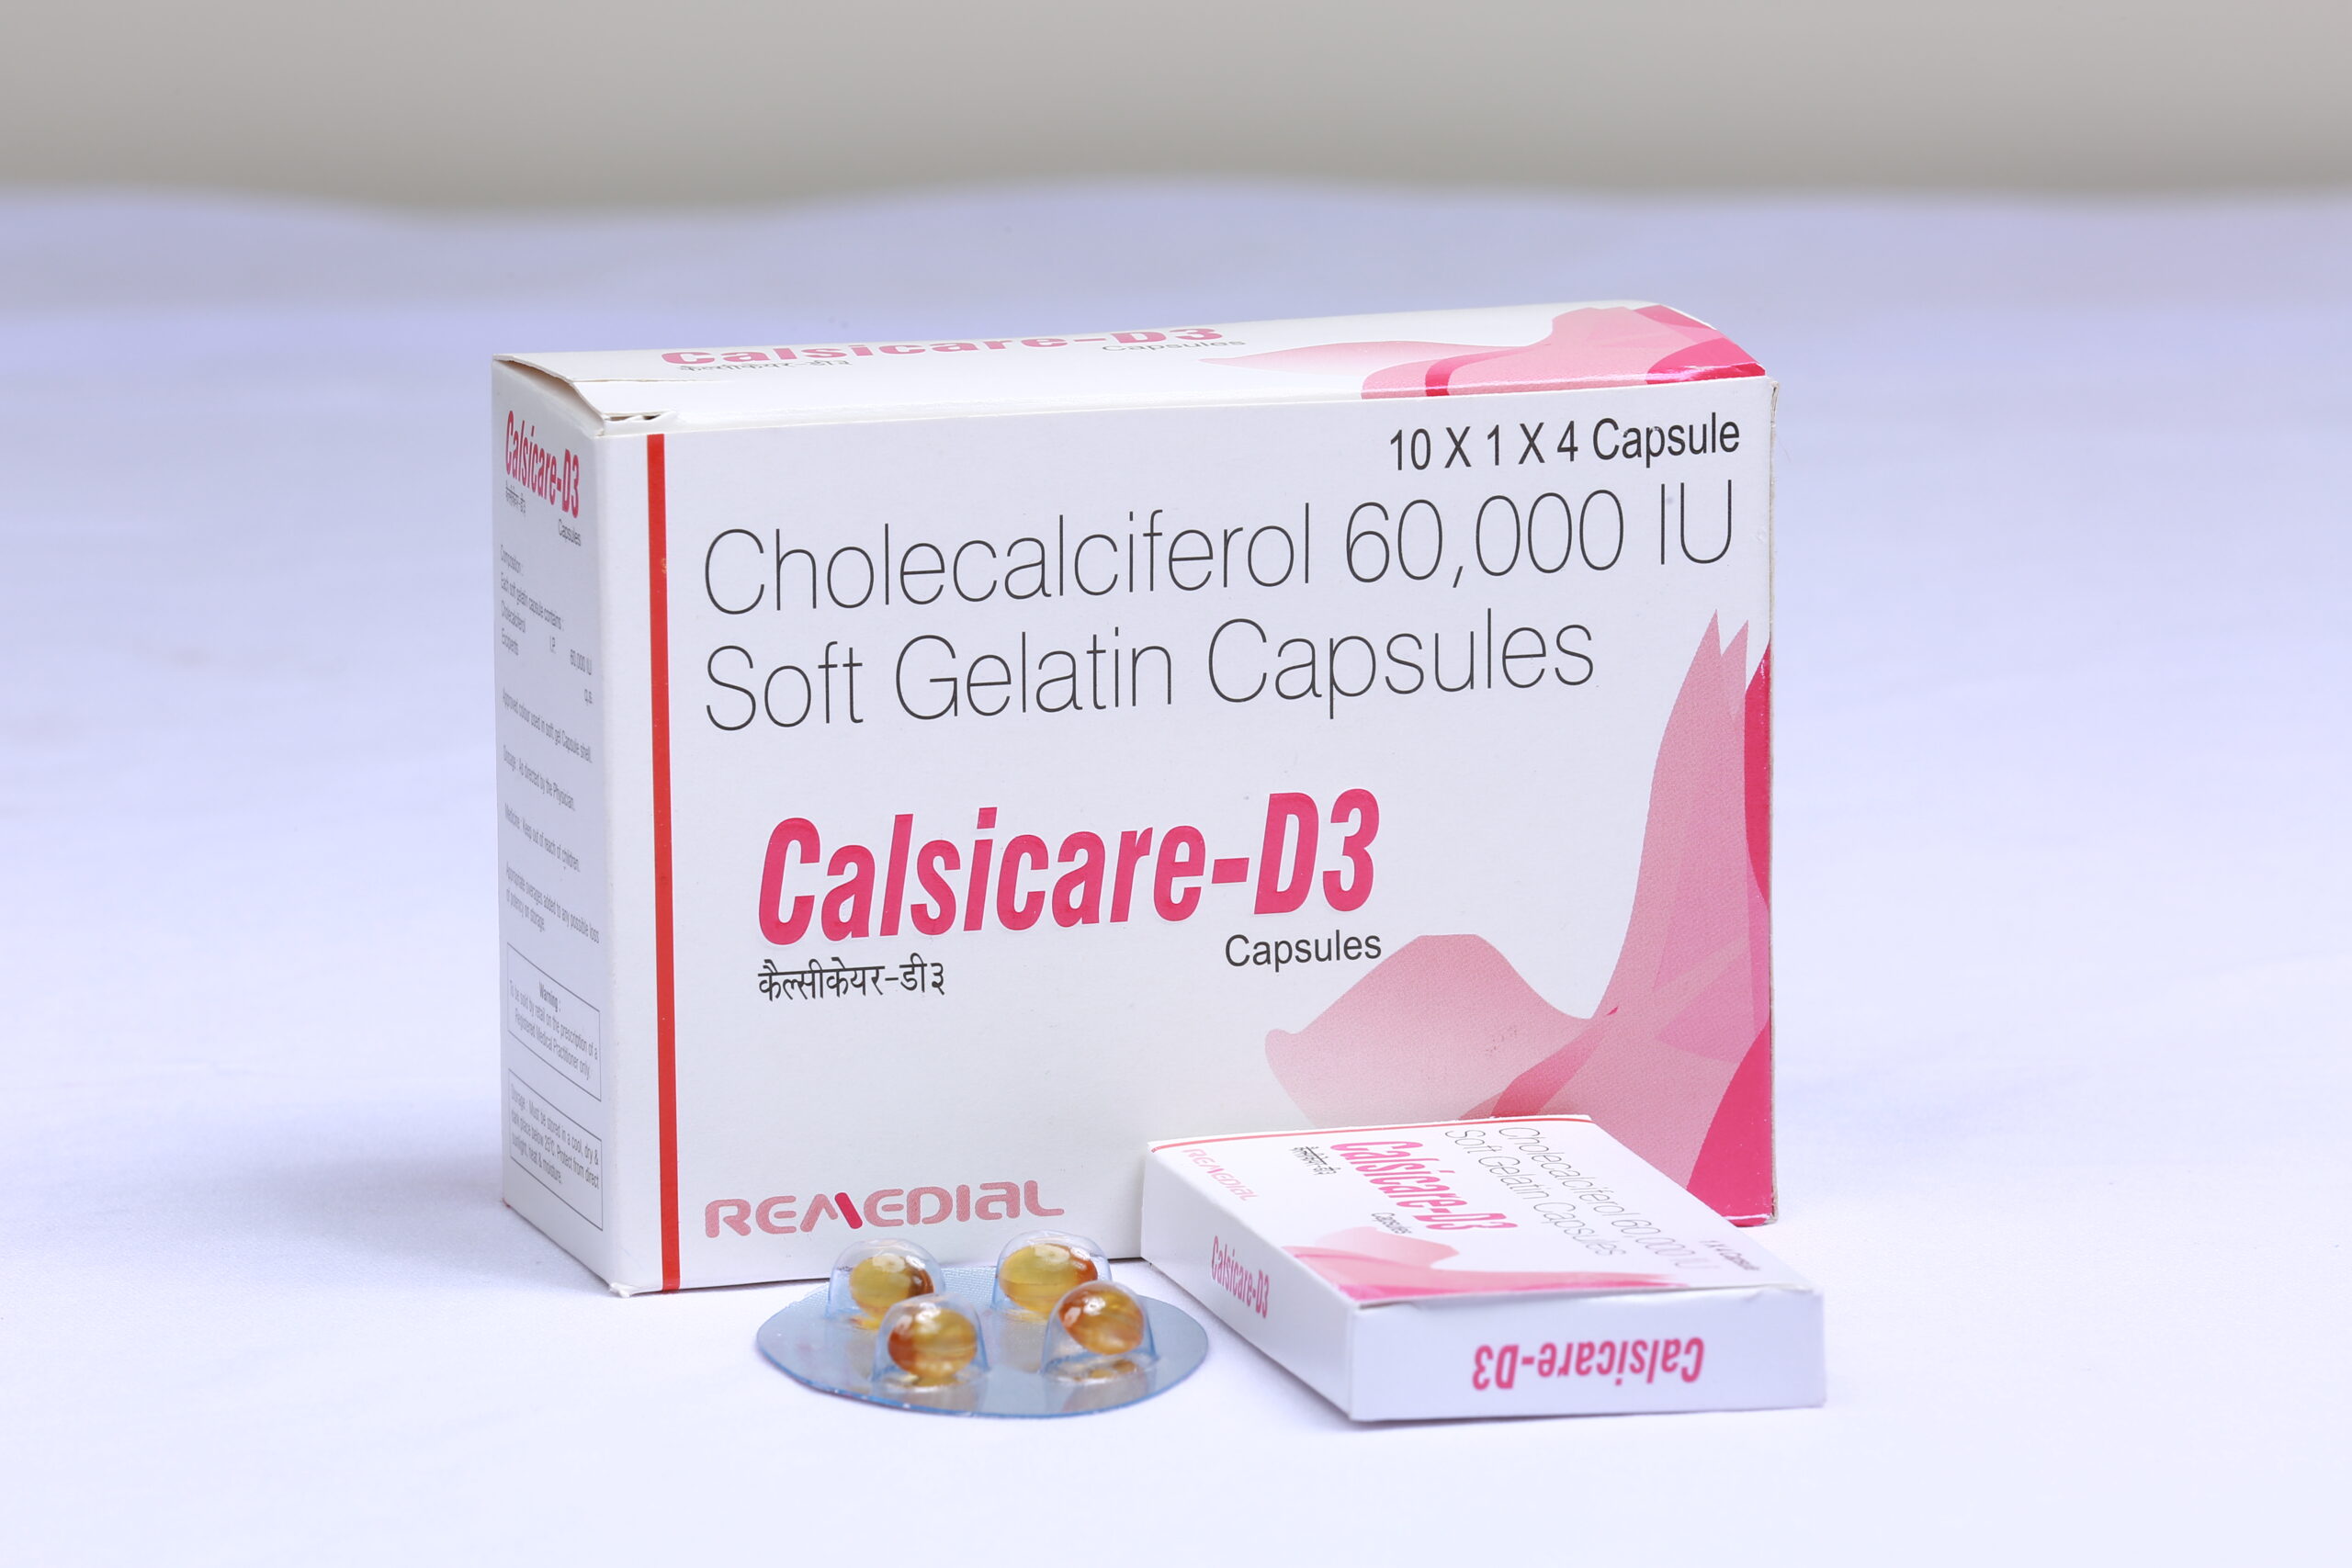 CALSICARE -D3 (Cholecalciferol 60,000 IU SOFT-GELCapsules)